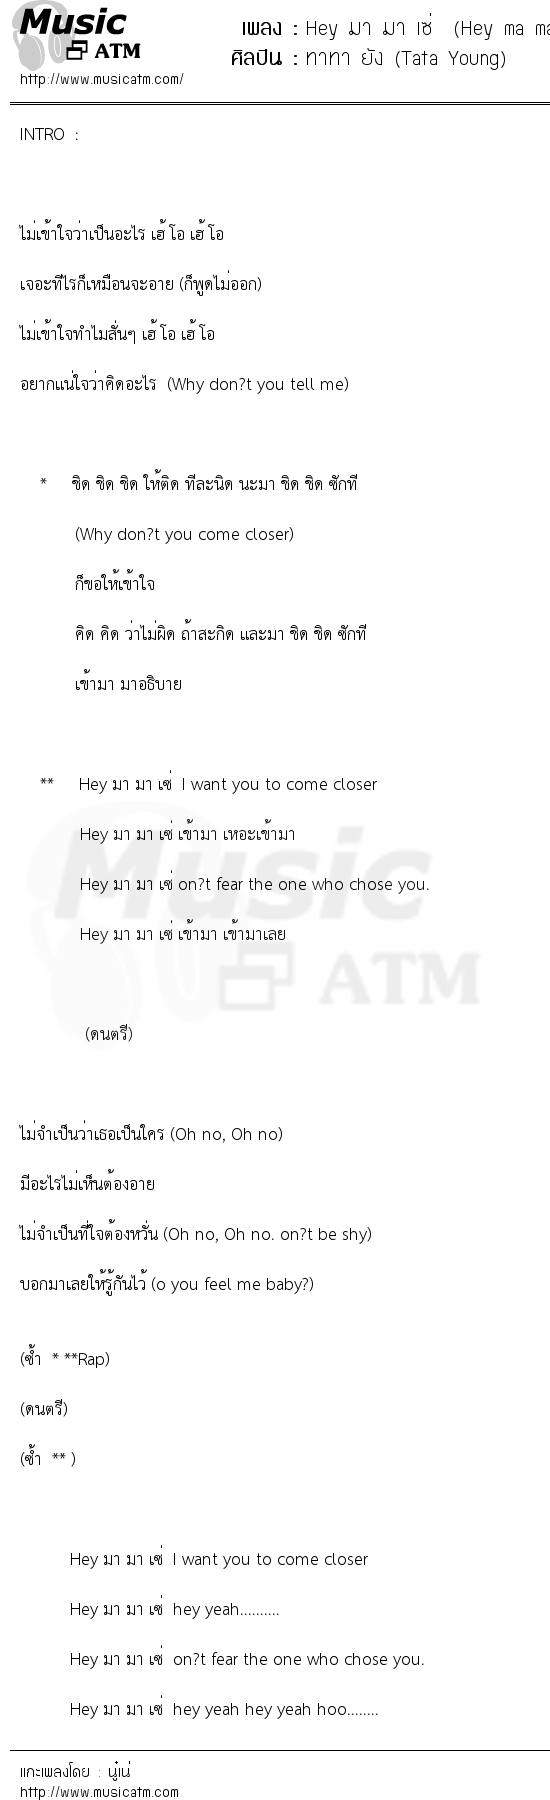 เนื้อเพลง Hey มา มา เซ่ (Hey ma ma Say) - ทาทา ยัง (Tata Young) | เพลงไทย